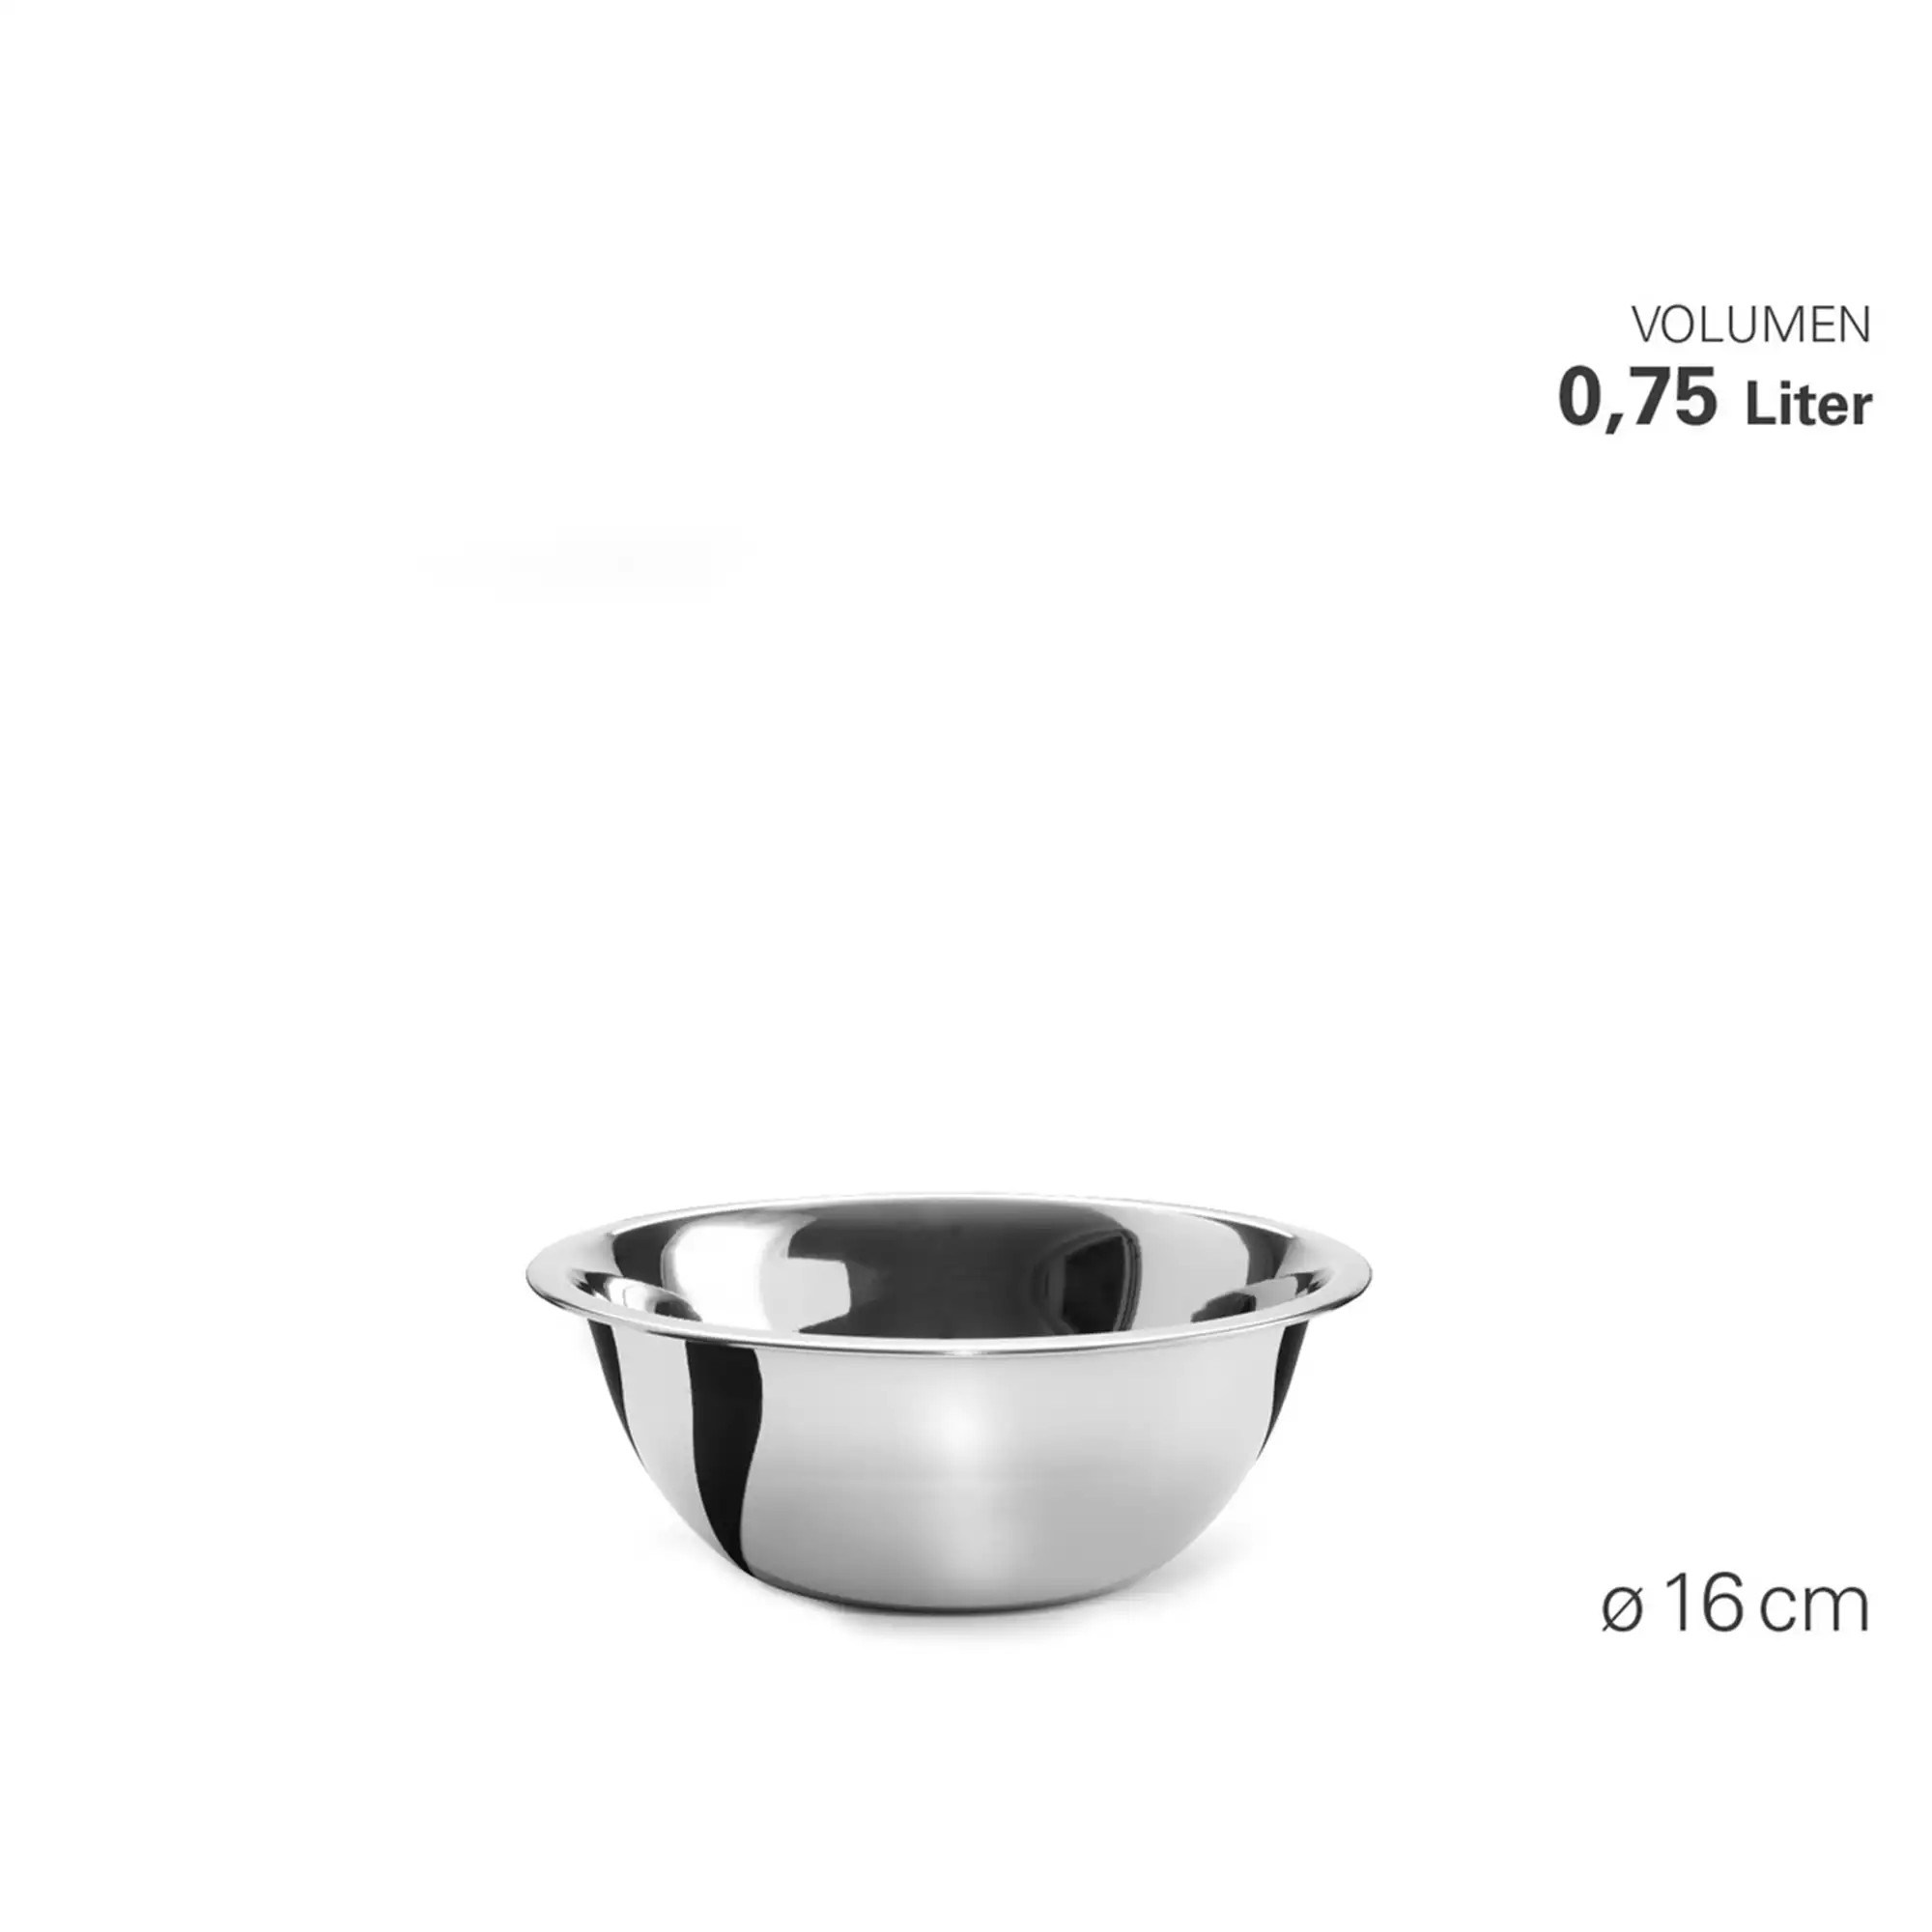 Küchenschüssel Edelstahl 16 cm 0,75 Liter